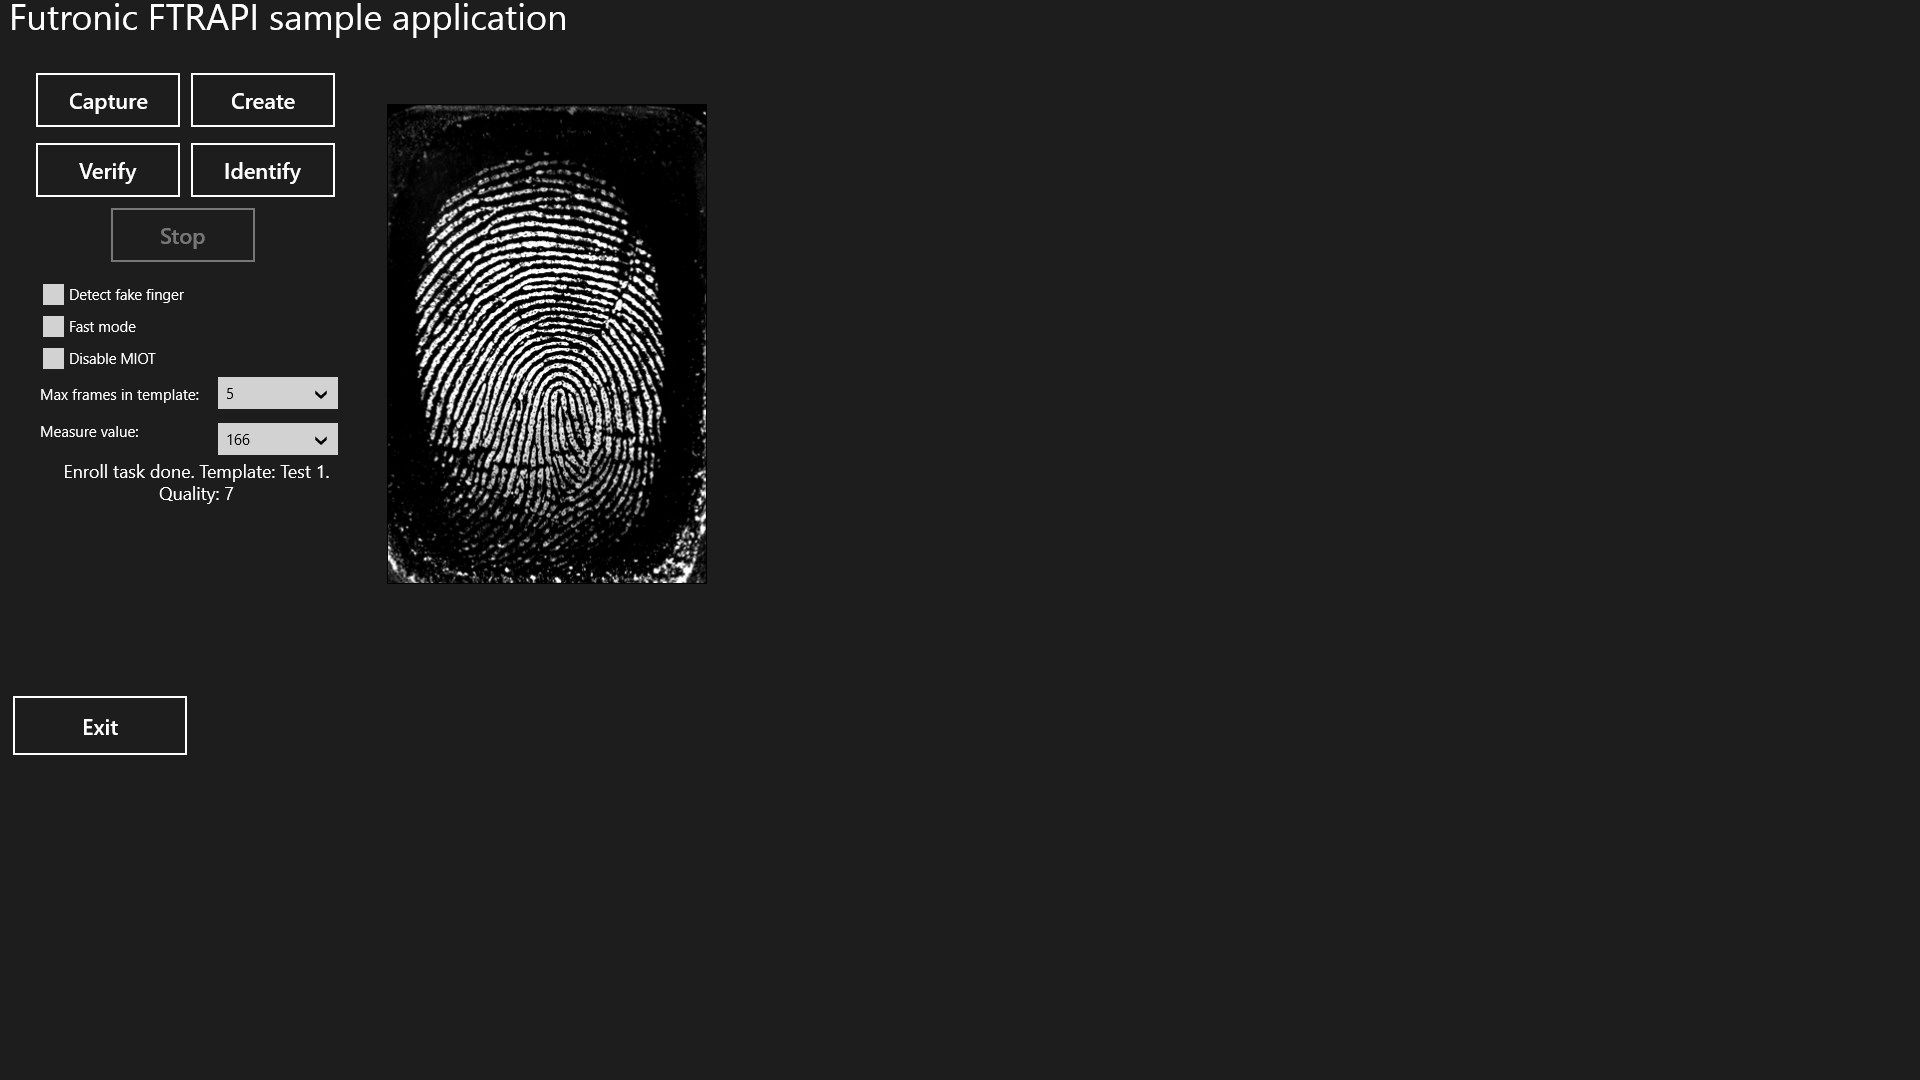 Enroll Fingerprint template